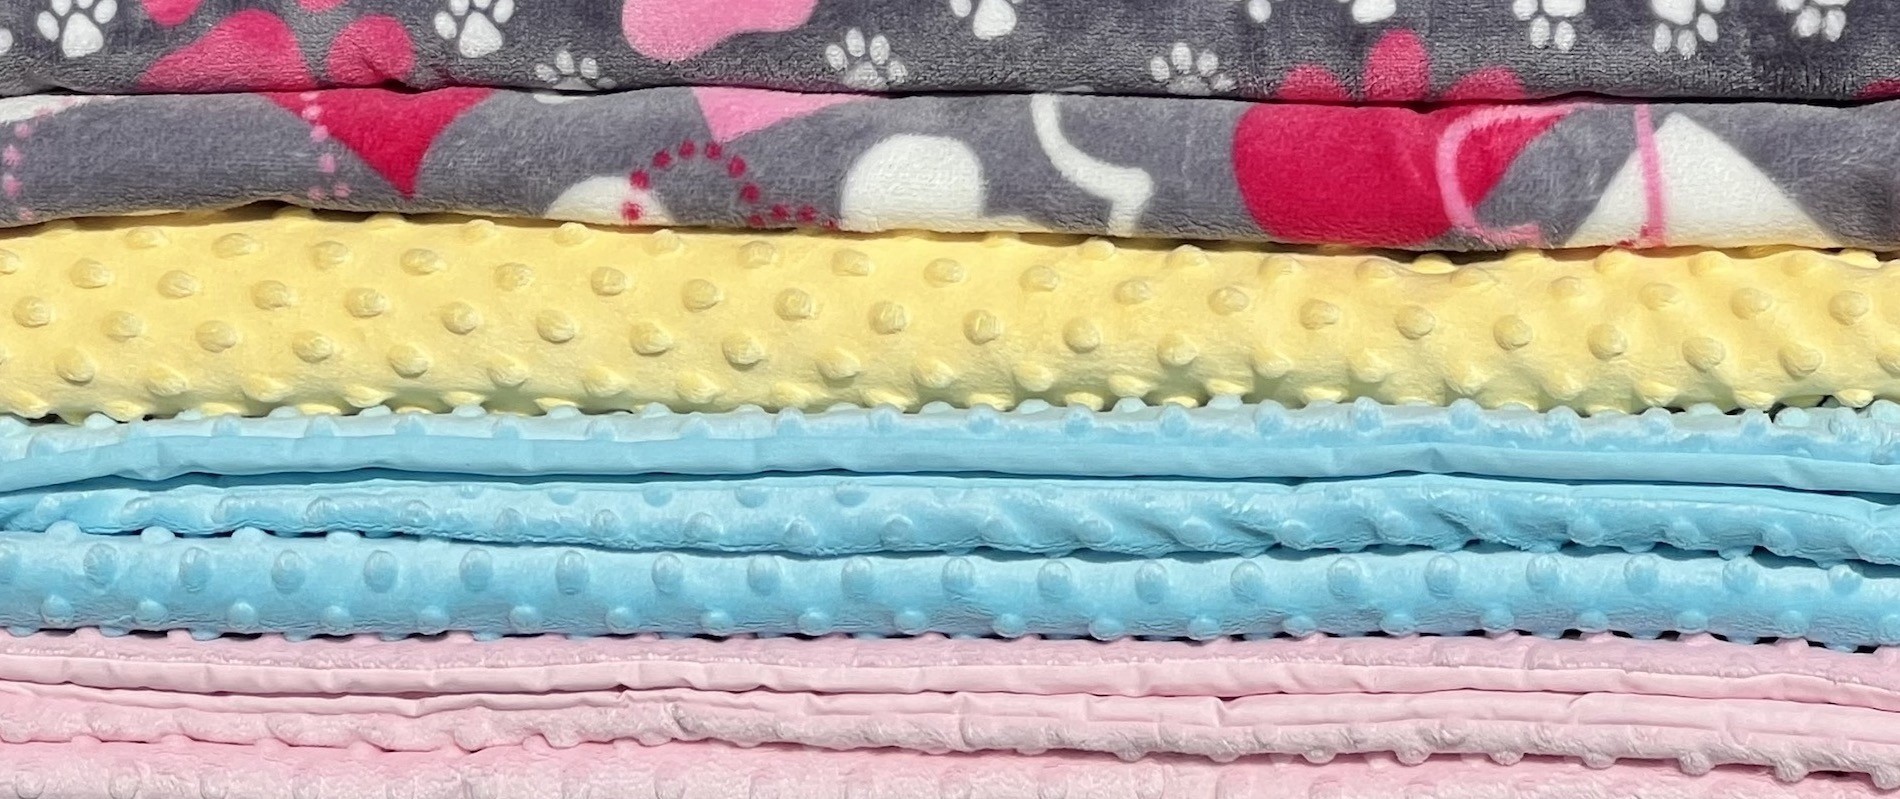 Children's blankets